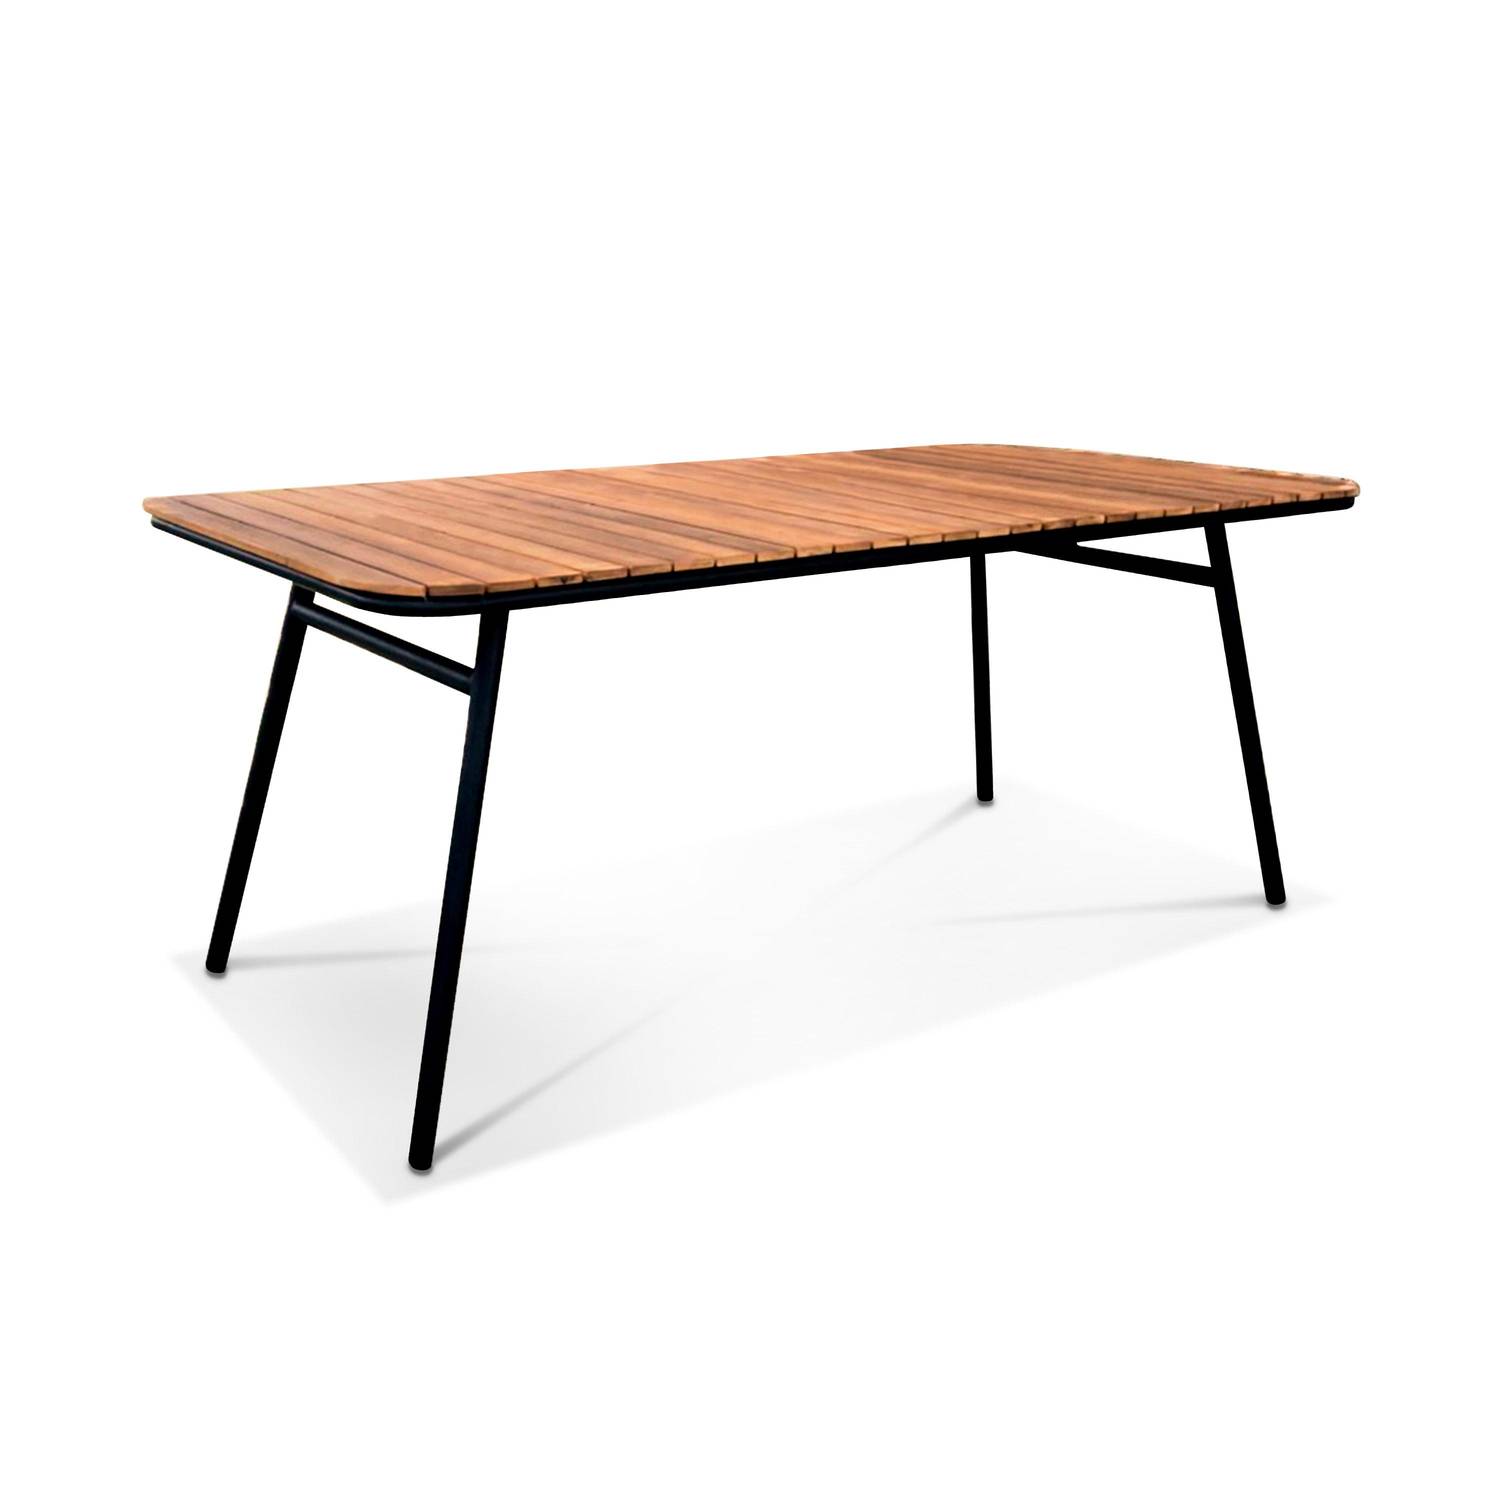 Gartenmöbel-Set aus Holz und Metall 180x90cm - Lima - Rechteckiger Tisch aus Akazie und Metall mit 4 Stühlen und 2 stapelbaren Sesseln Photo6